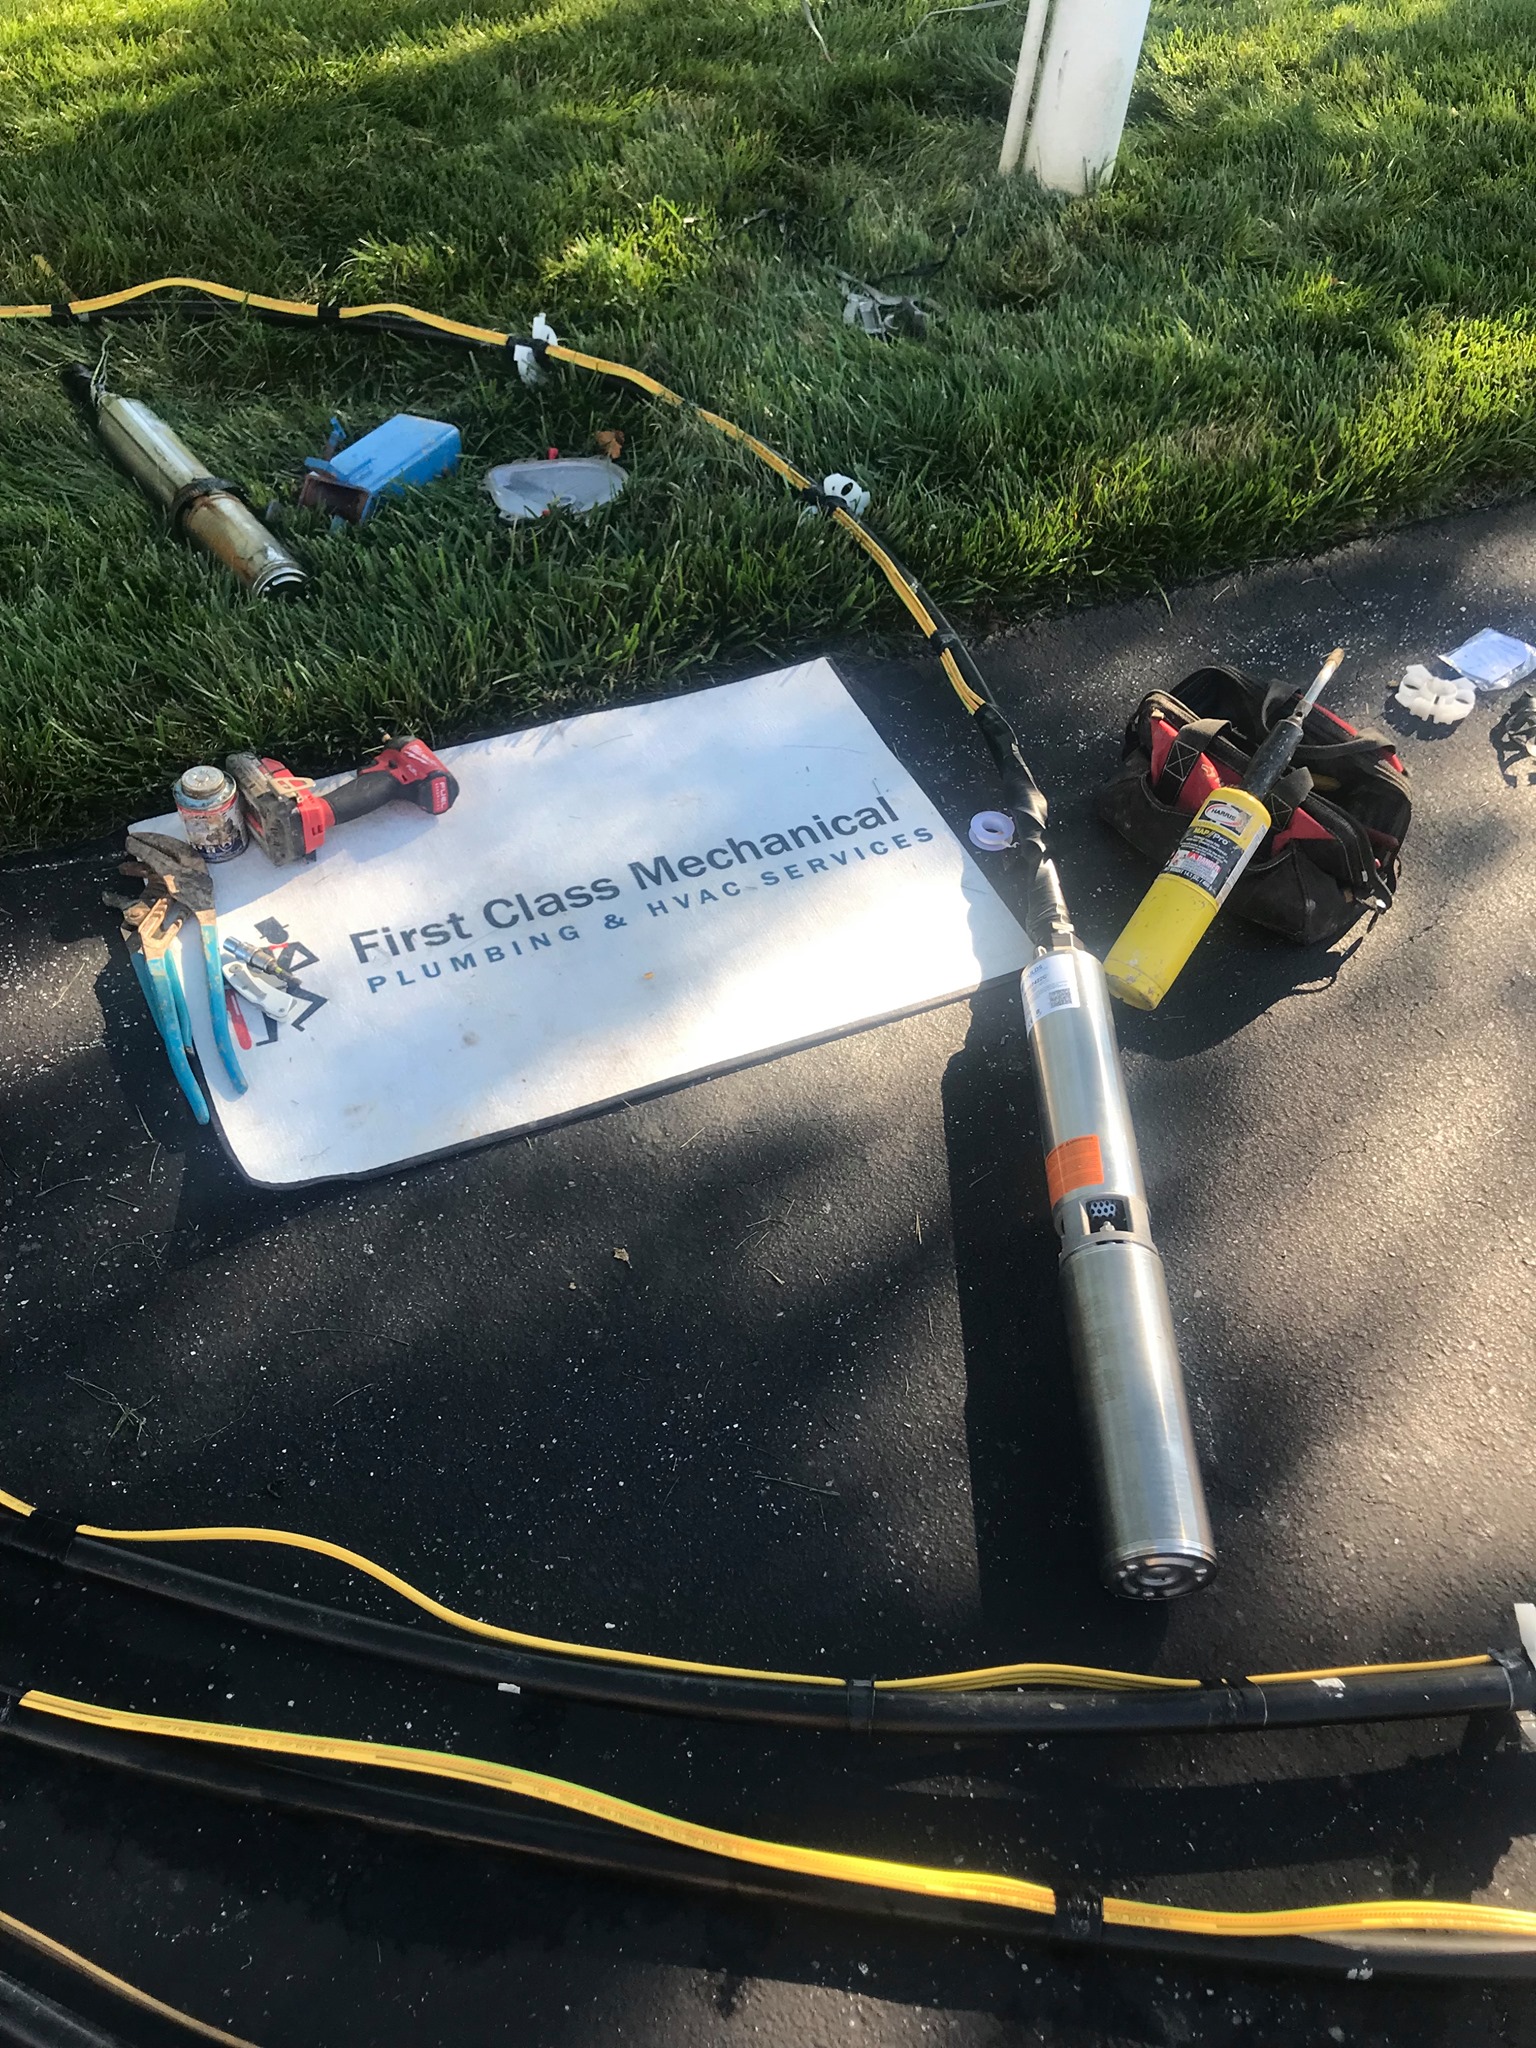 Phoenix MD First Class Mechanical Emergency Well Pump Repair